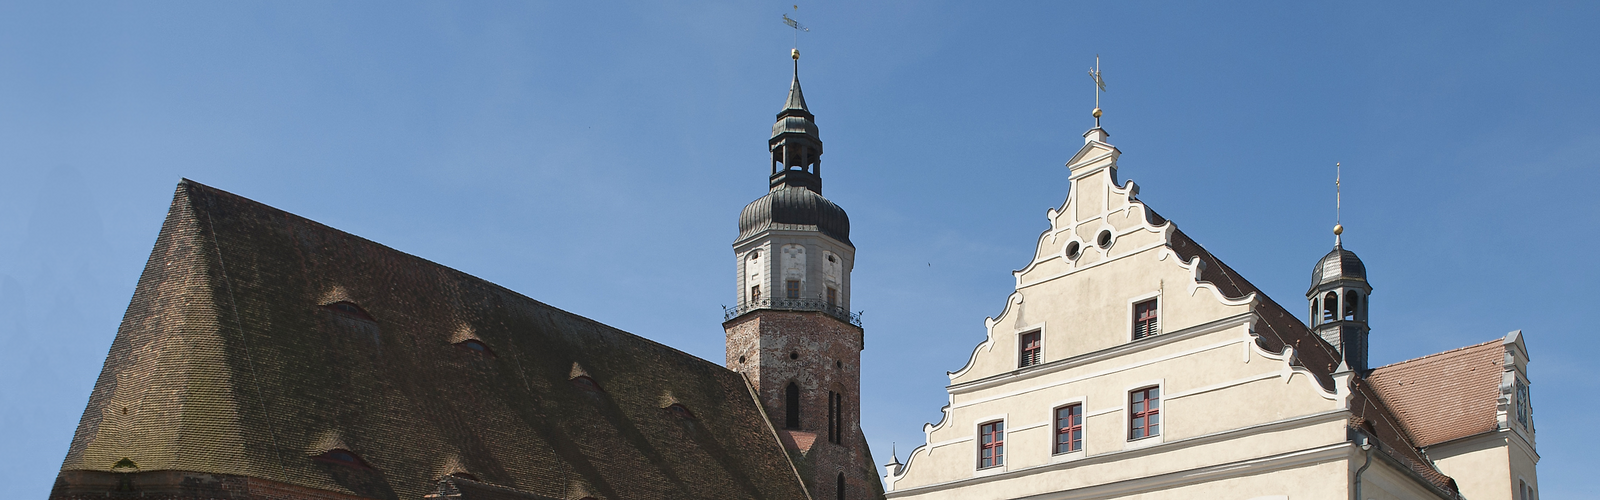 Dächer der Marienkirche und des Rathauses in Herzberg,
        
    

        Foto: Fotograf / Lizenz - Media Import/Erik-Jan Ouwerkerk